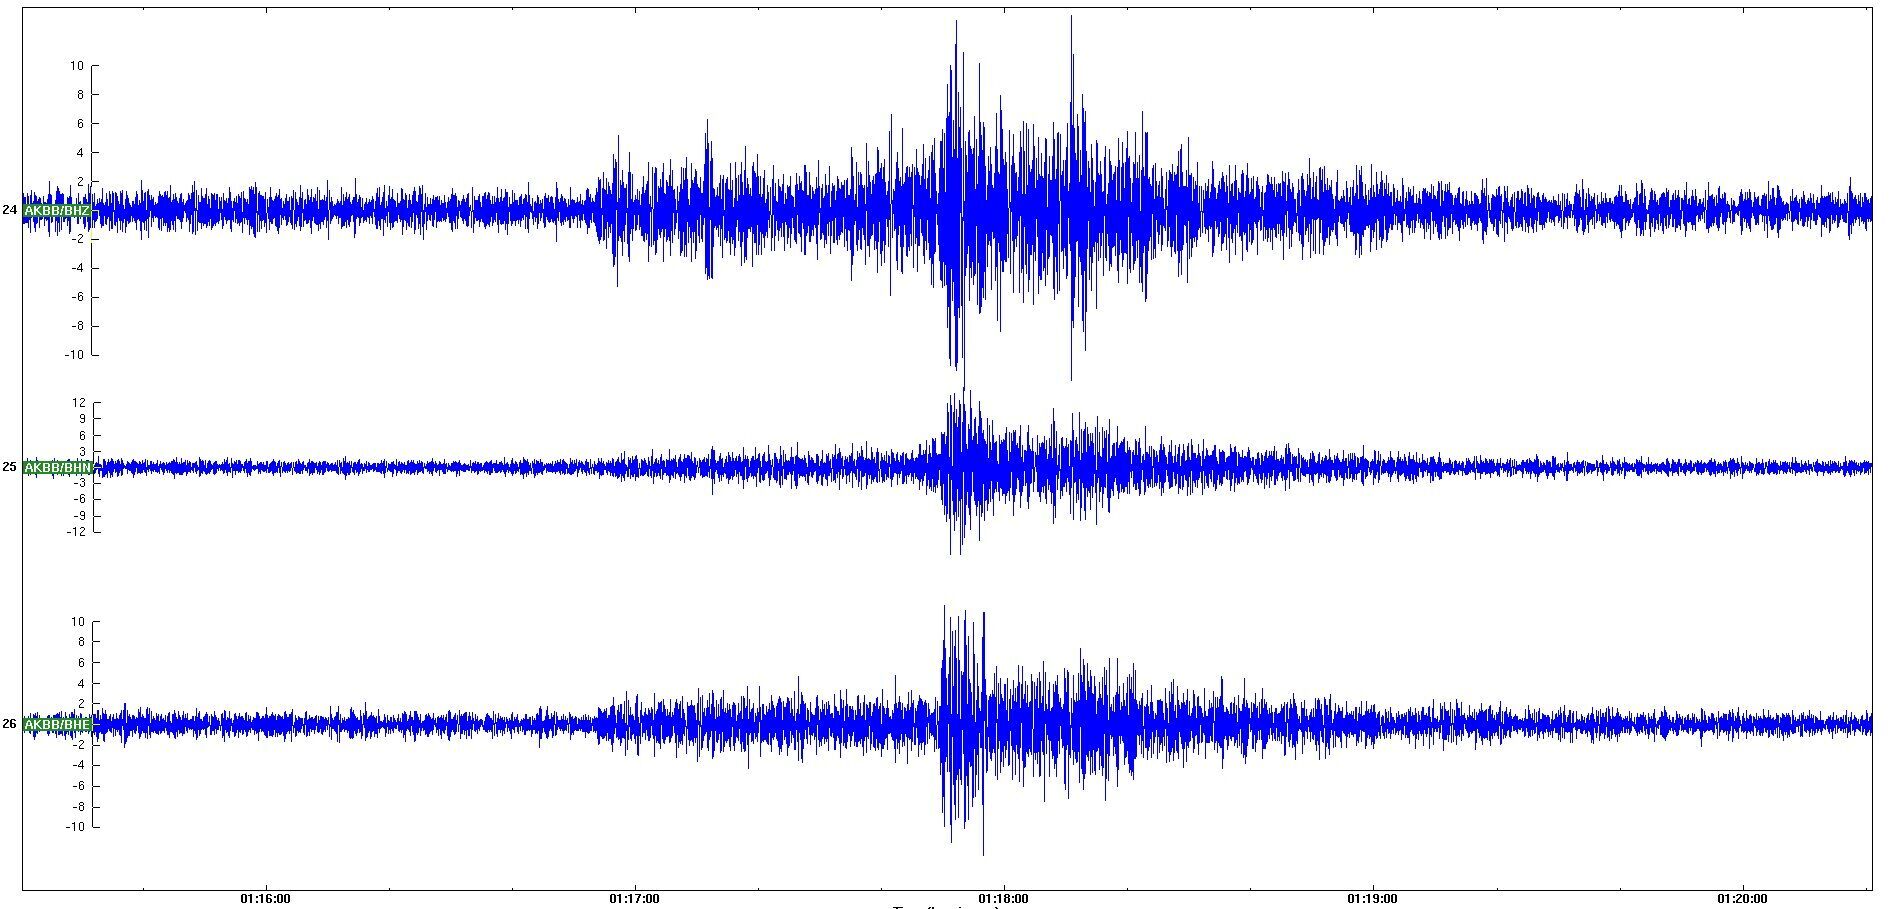 На Закарпатье произошло землетрясение магнитудой 3,3